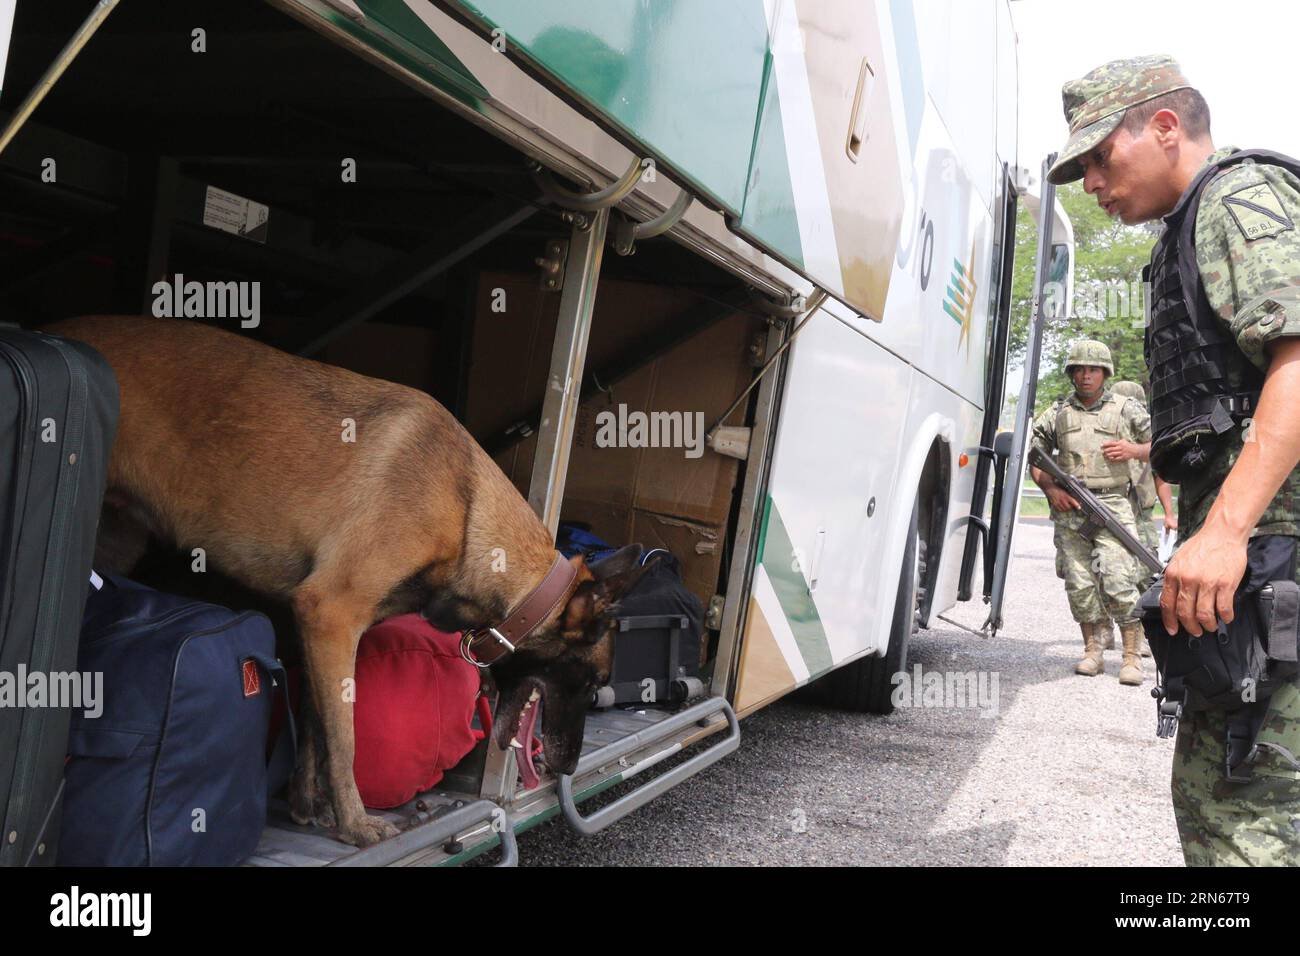 ACAPULCO, le 14 juillet 2015 -- des membres de l'armée mexicaine vérifient un autocar lors d'une opération de recherche du roi de la drogue du Mexique, Joaquin El Chapo Guzman, au poste de péage de la Venta, entrée d'Acapulco, État de Guerrero, au sud du Mexique, le 14 juillet, 2015. Javier Verdin) (rtg) MEXICO-ACAPULCO-SECURITY-GUZMAN LOERA e JavierxVerd¨ªn PUBLICATIONxNOTxINxCHN Acapulco, Mexique juillet 14 2015 des membres de l'armée MEXICAINE vérifient un entraîneur lors d'une opération de recherche pour le roi de la drogue du Mexique Joaquin El Chapo Guzman AU poste de péage de la Venta entrée d'Acapulco, Mexique État de Guerrero au sud du Mexique LE 14 201 juillet Banque D'Images